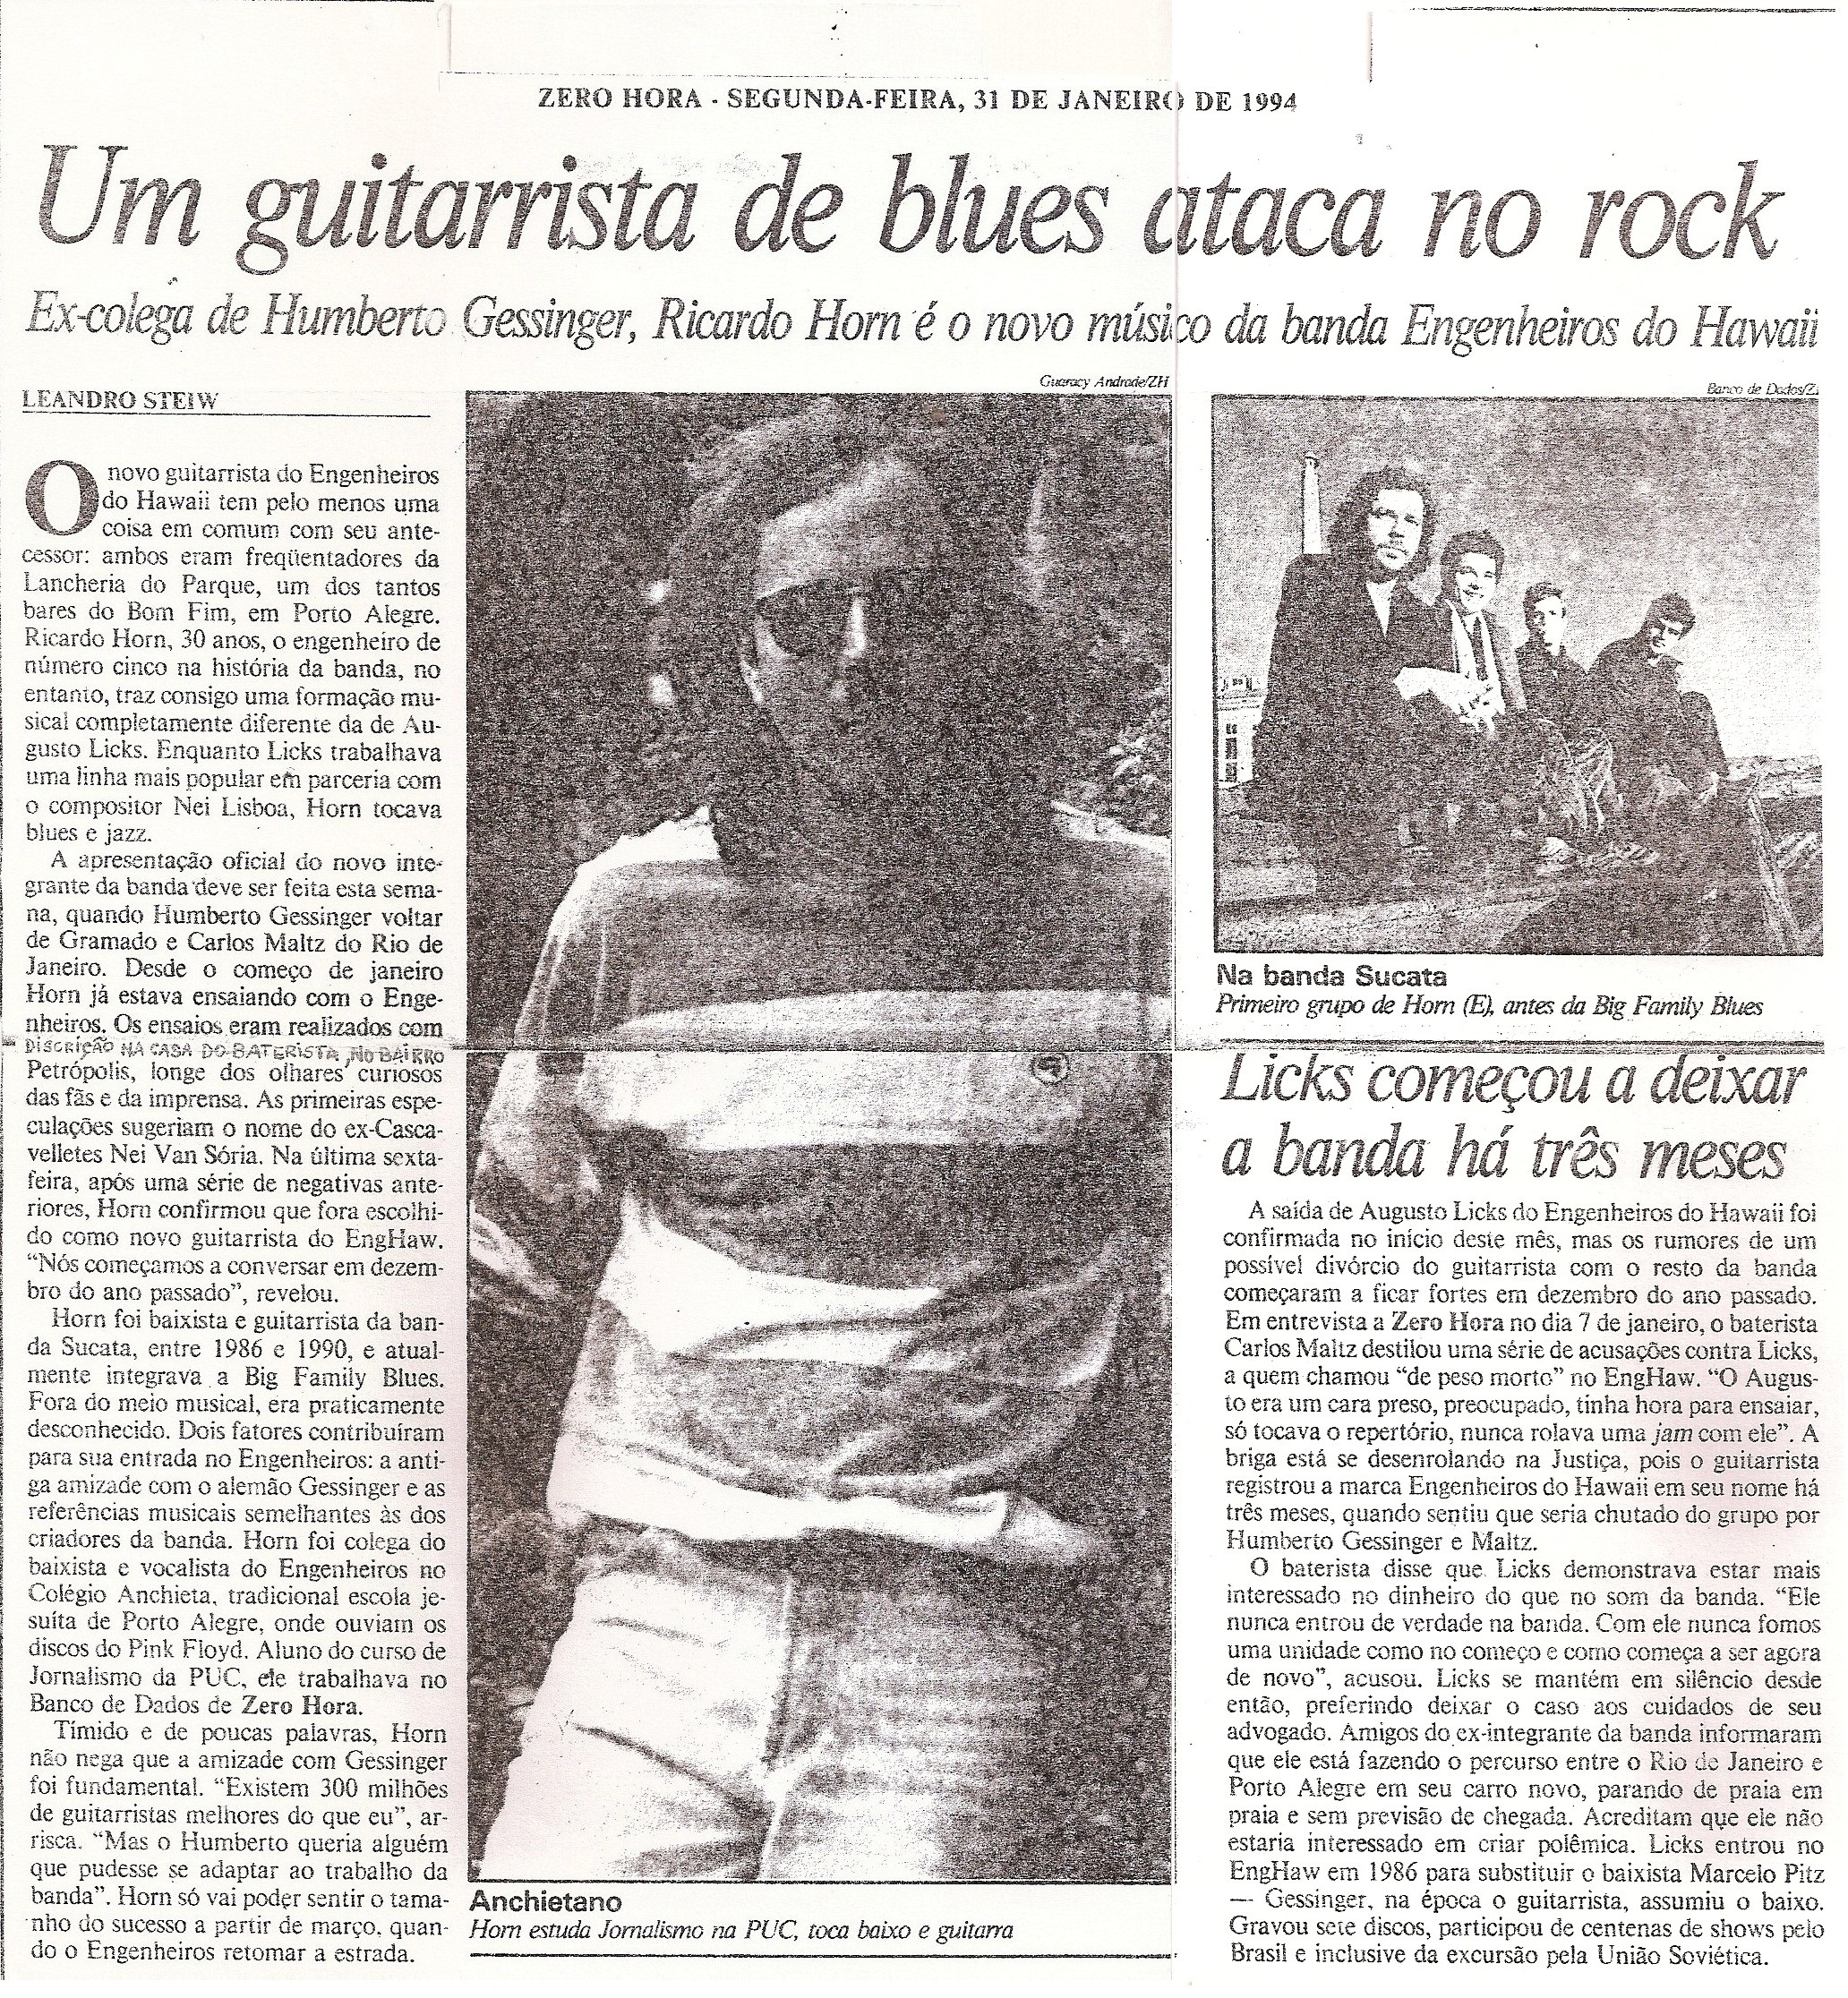 1994 - Um guitarrista de blues ataca no rock (ZH)